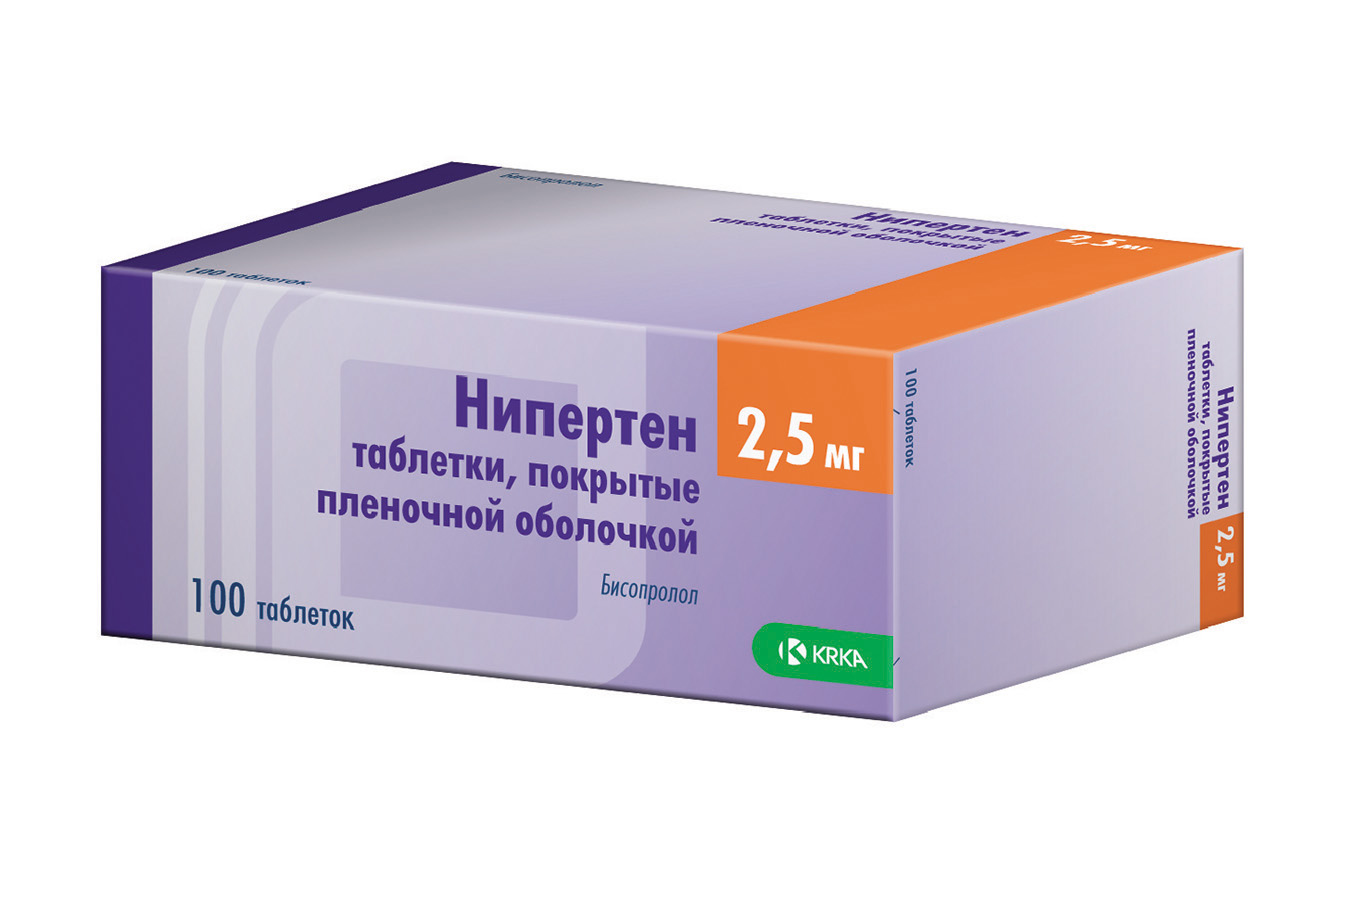 Купить Нипертен табл. п.п.о. 2.5 мг №100, цена 292 руб  .